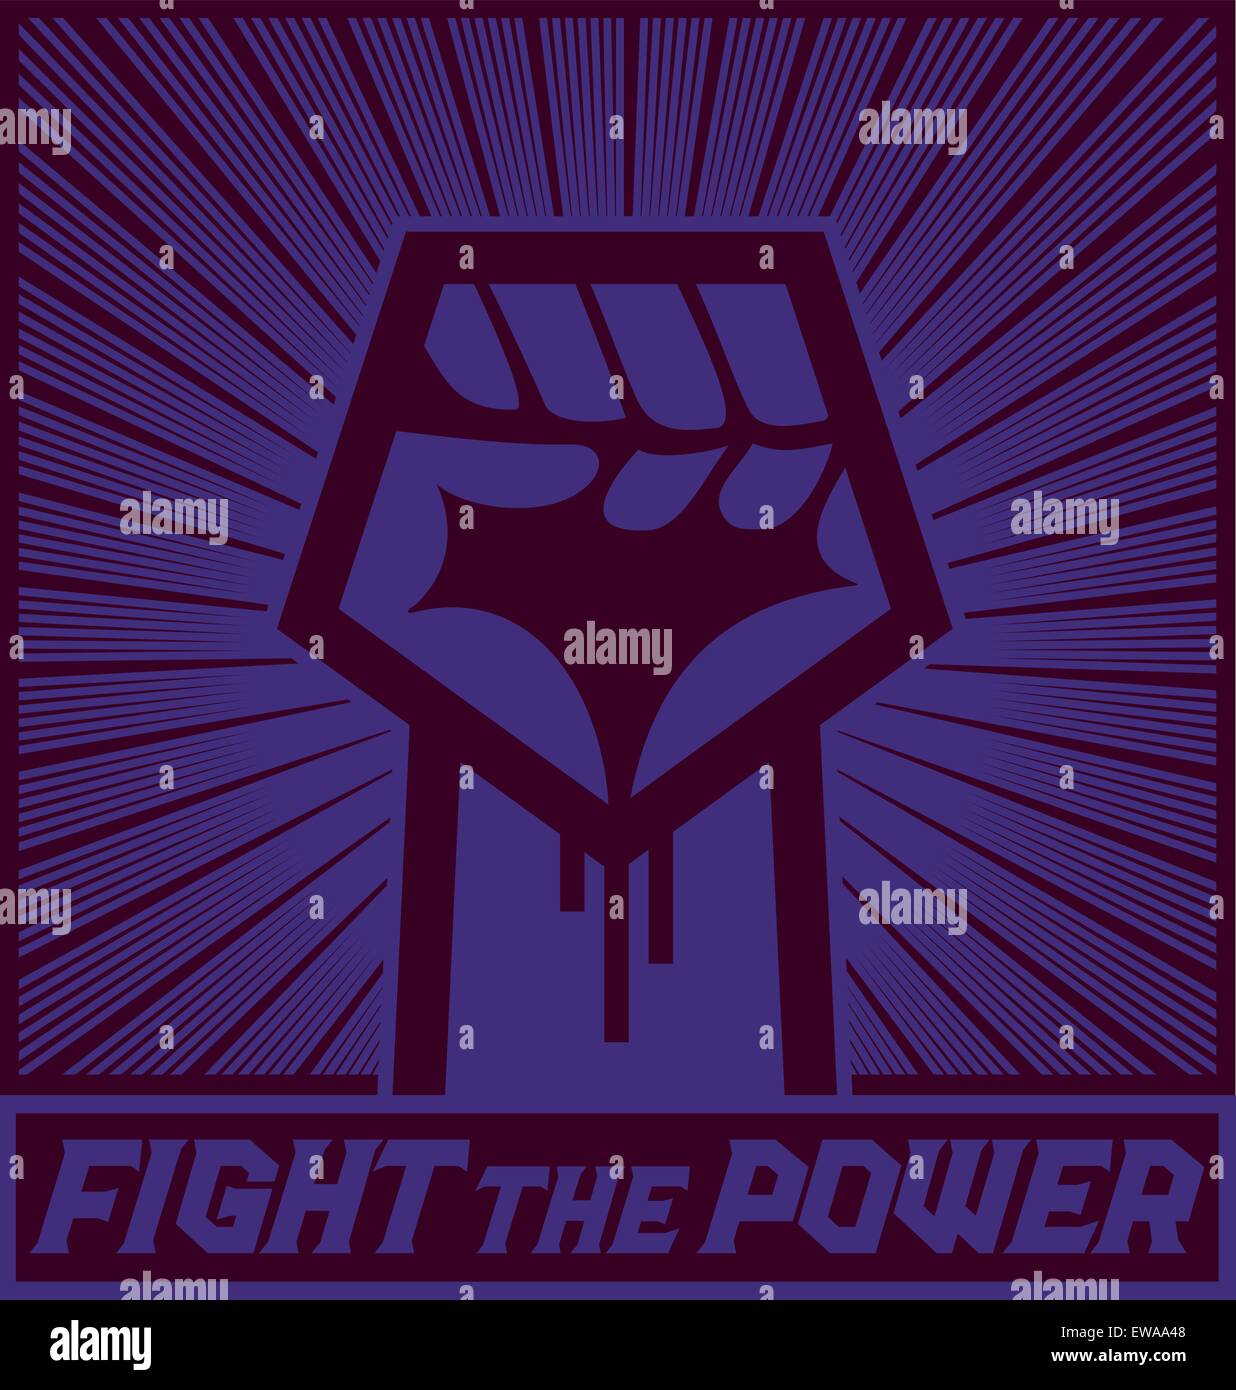 La lotta contro il potere! Mano alzata con pugno chiuso, protesta politica dimostrazione disegno vettoriale, stand up per i vostri diritti Illustrazione Vettoriale